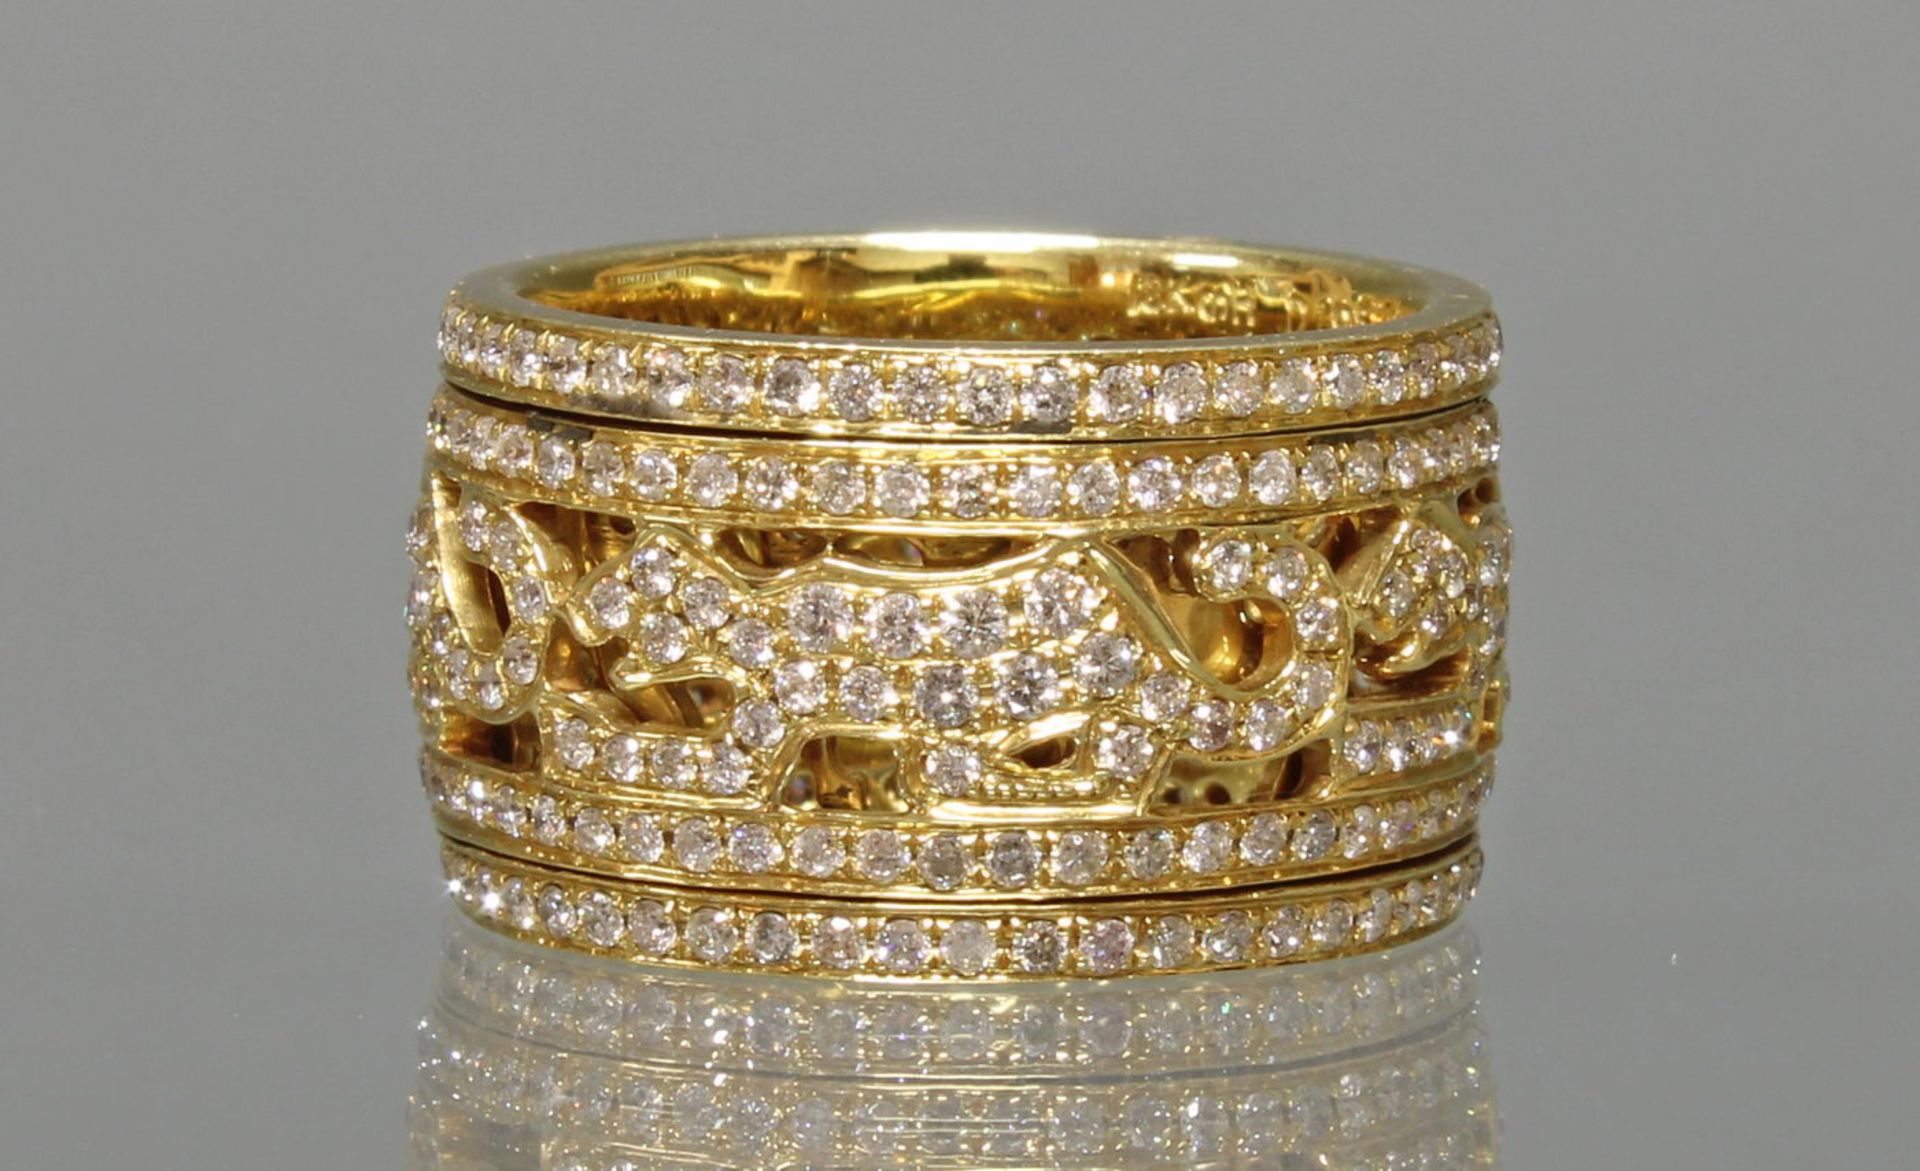 Ring, 'Panther', drehbares Mittelteil, GG 750, rundherum ausgefasst mit Brillanten zus. ca. 1.96 ct - Image 2 of 2